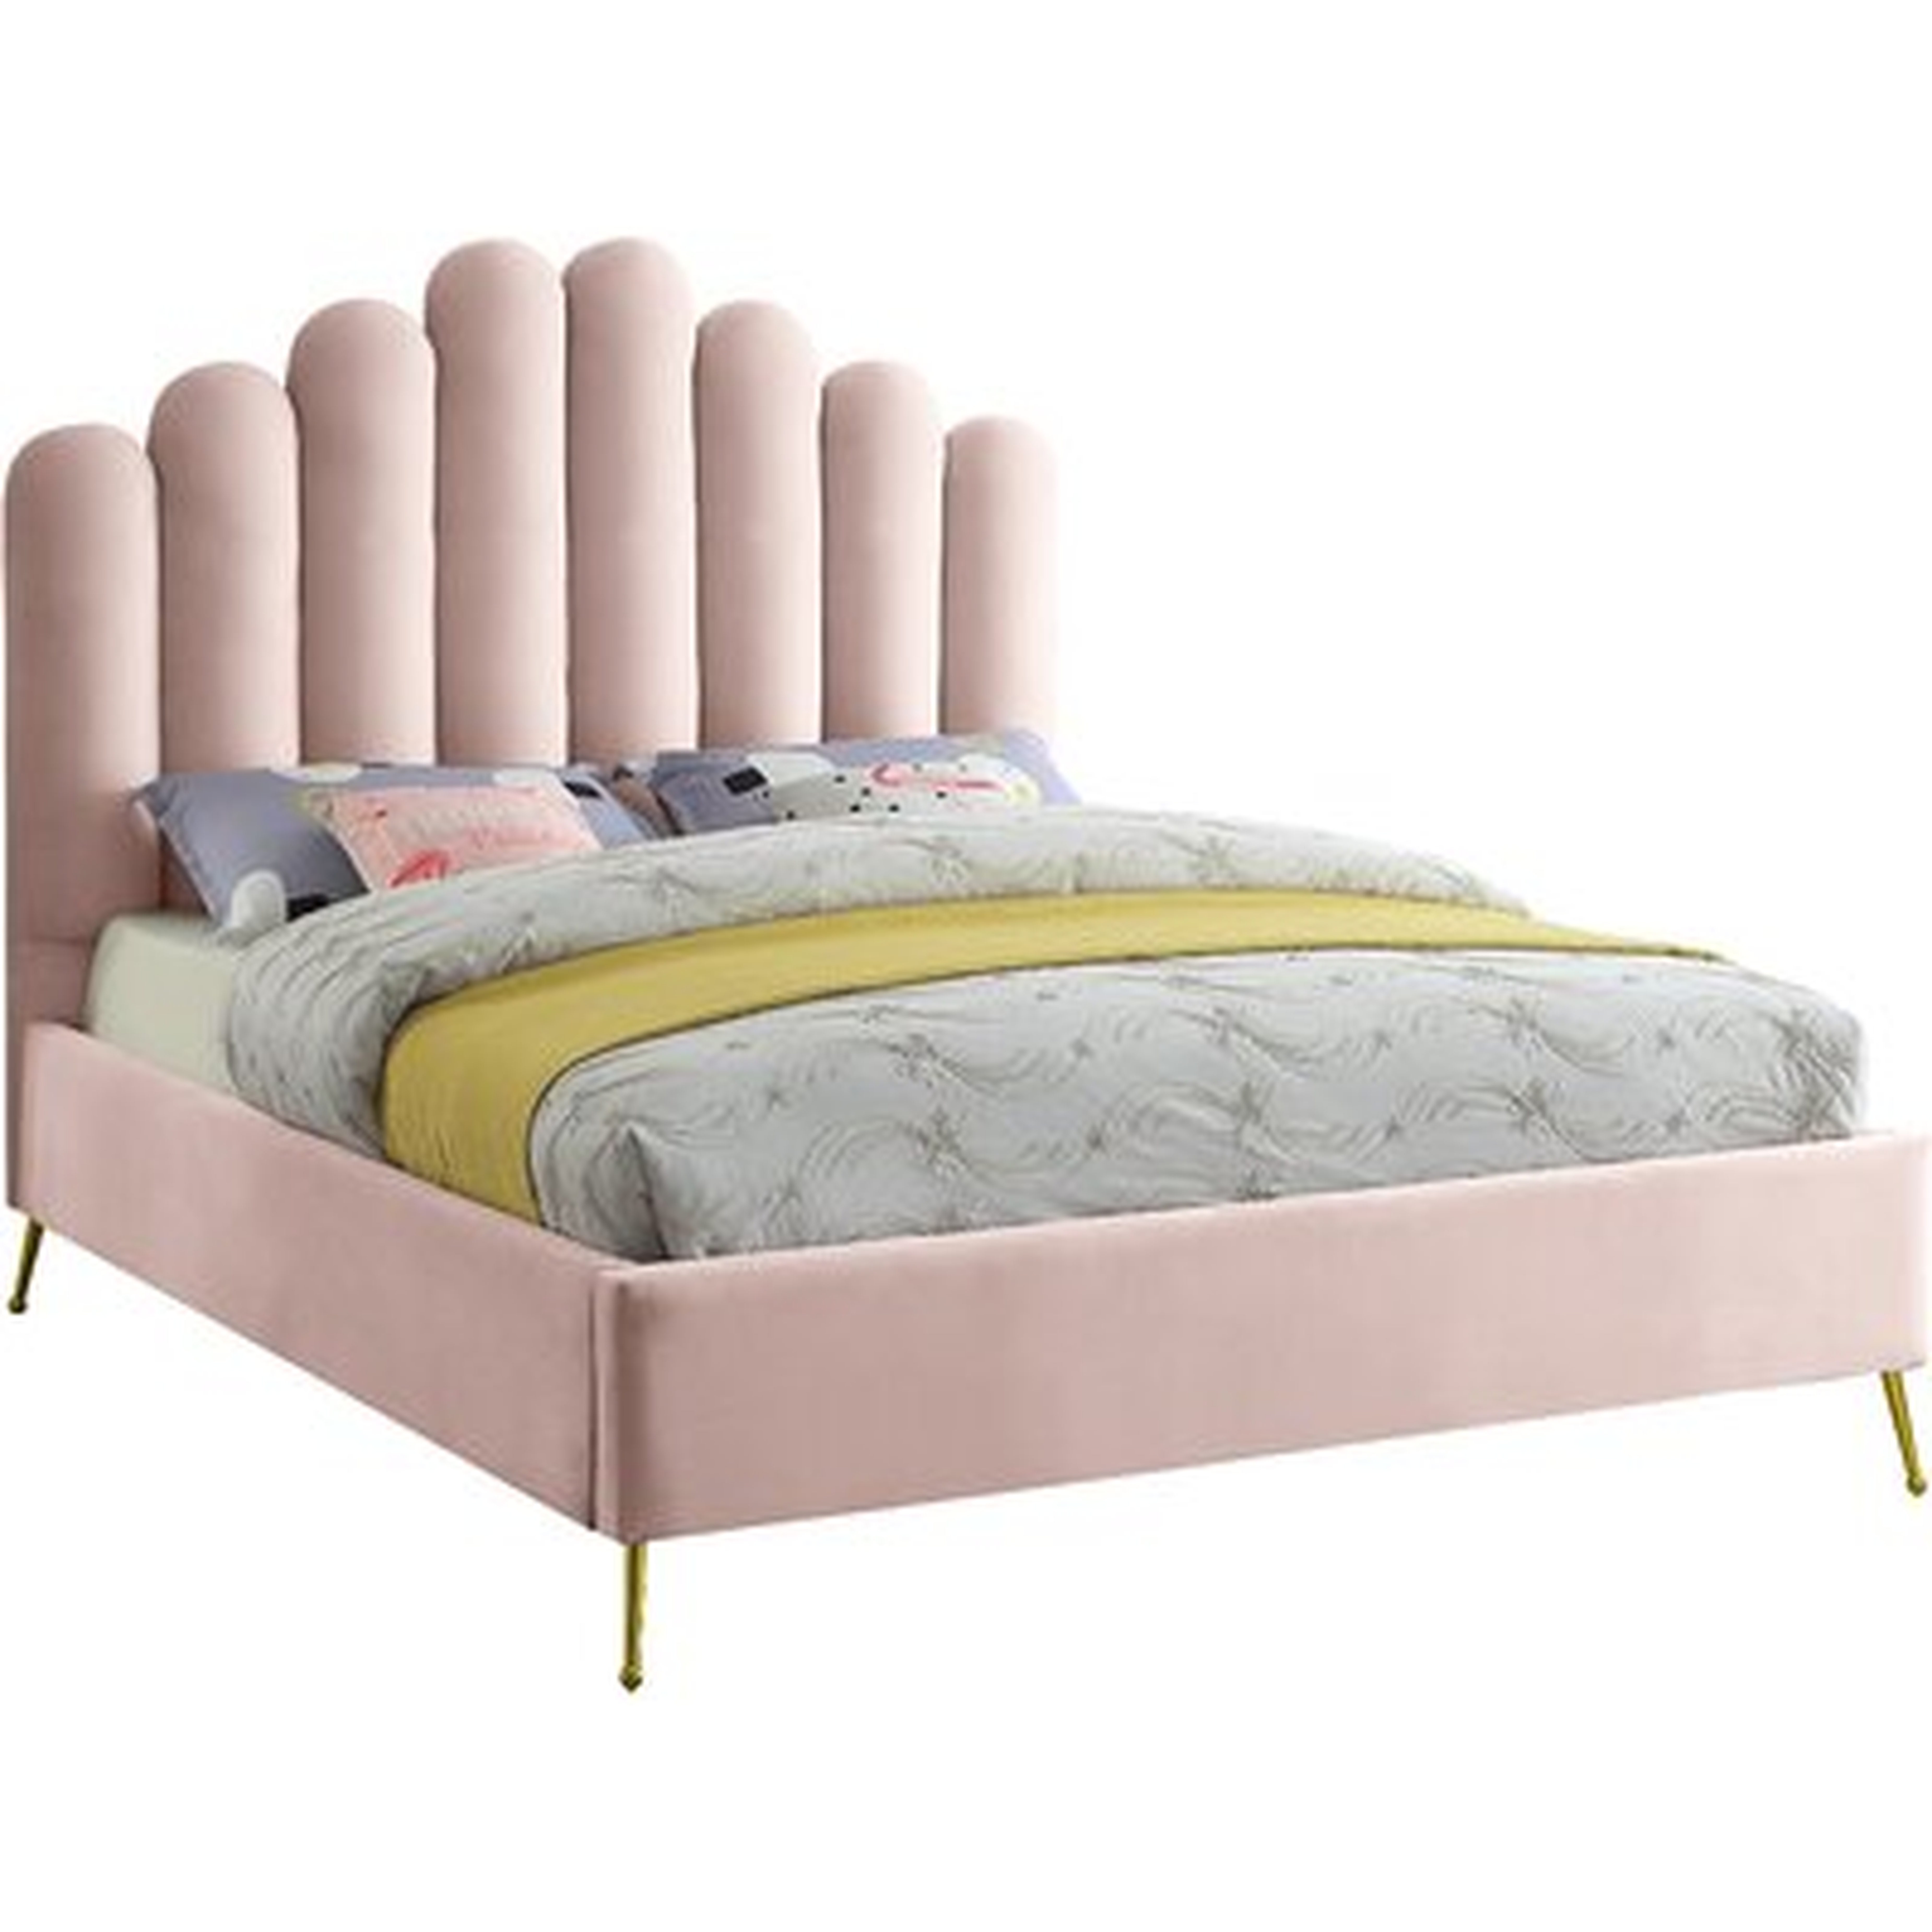 Sonette Upholstered Low Profile Platform Bed - Wayfair